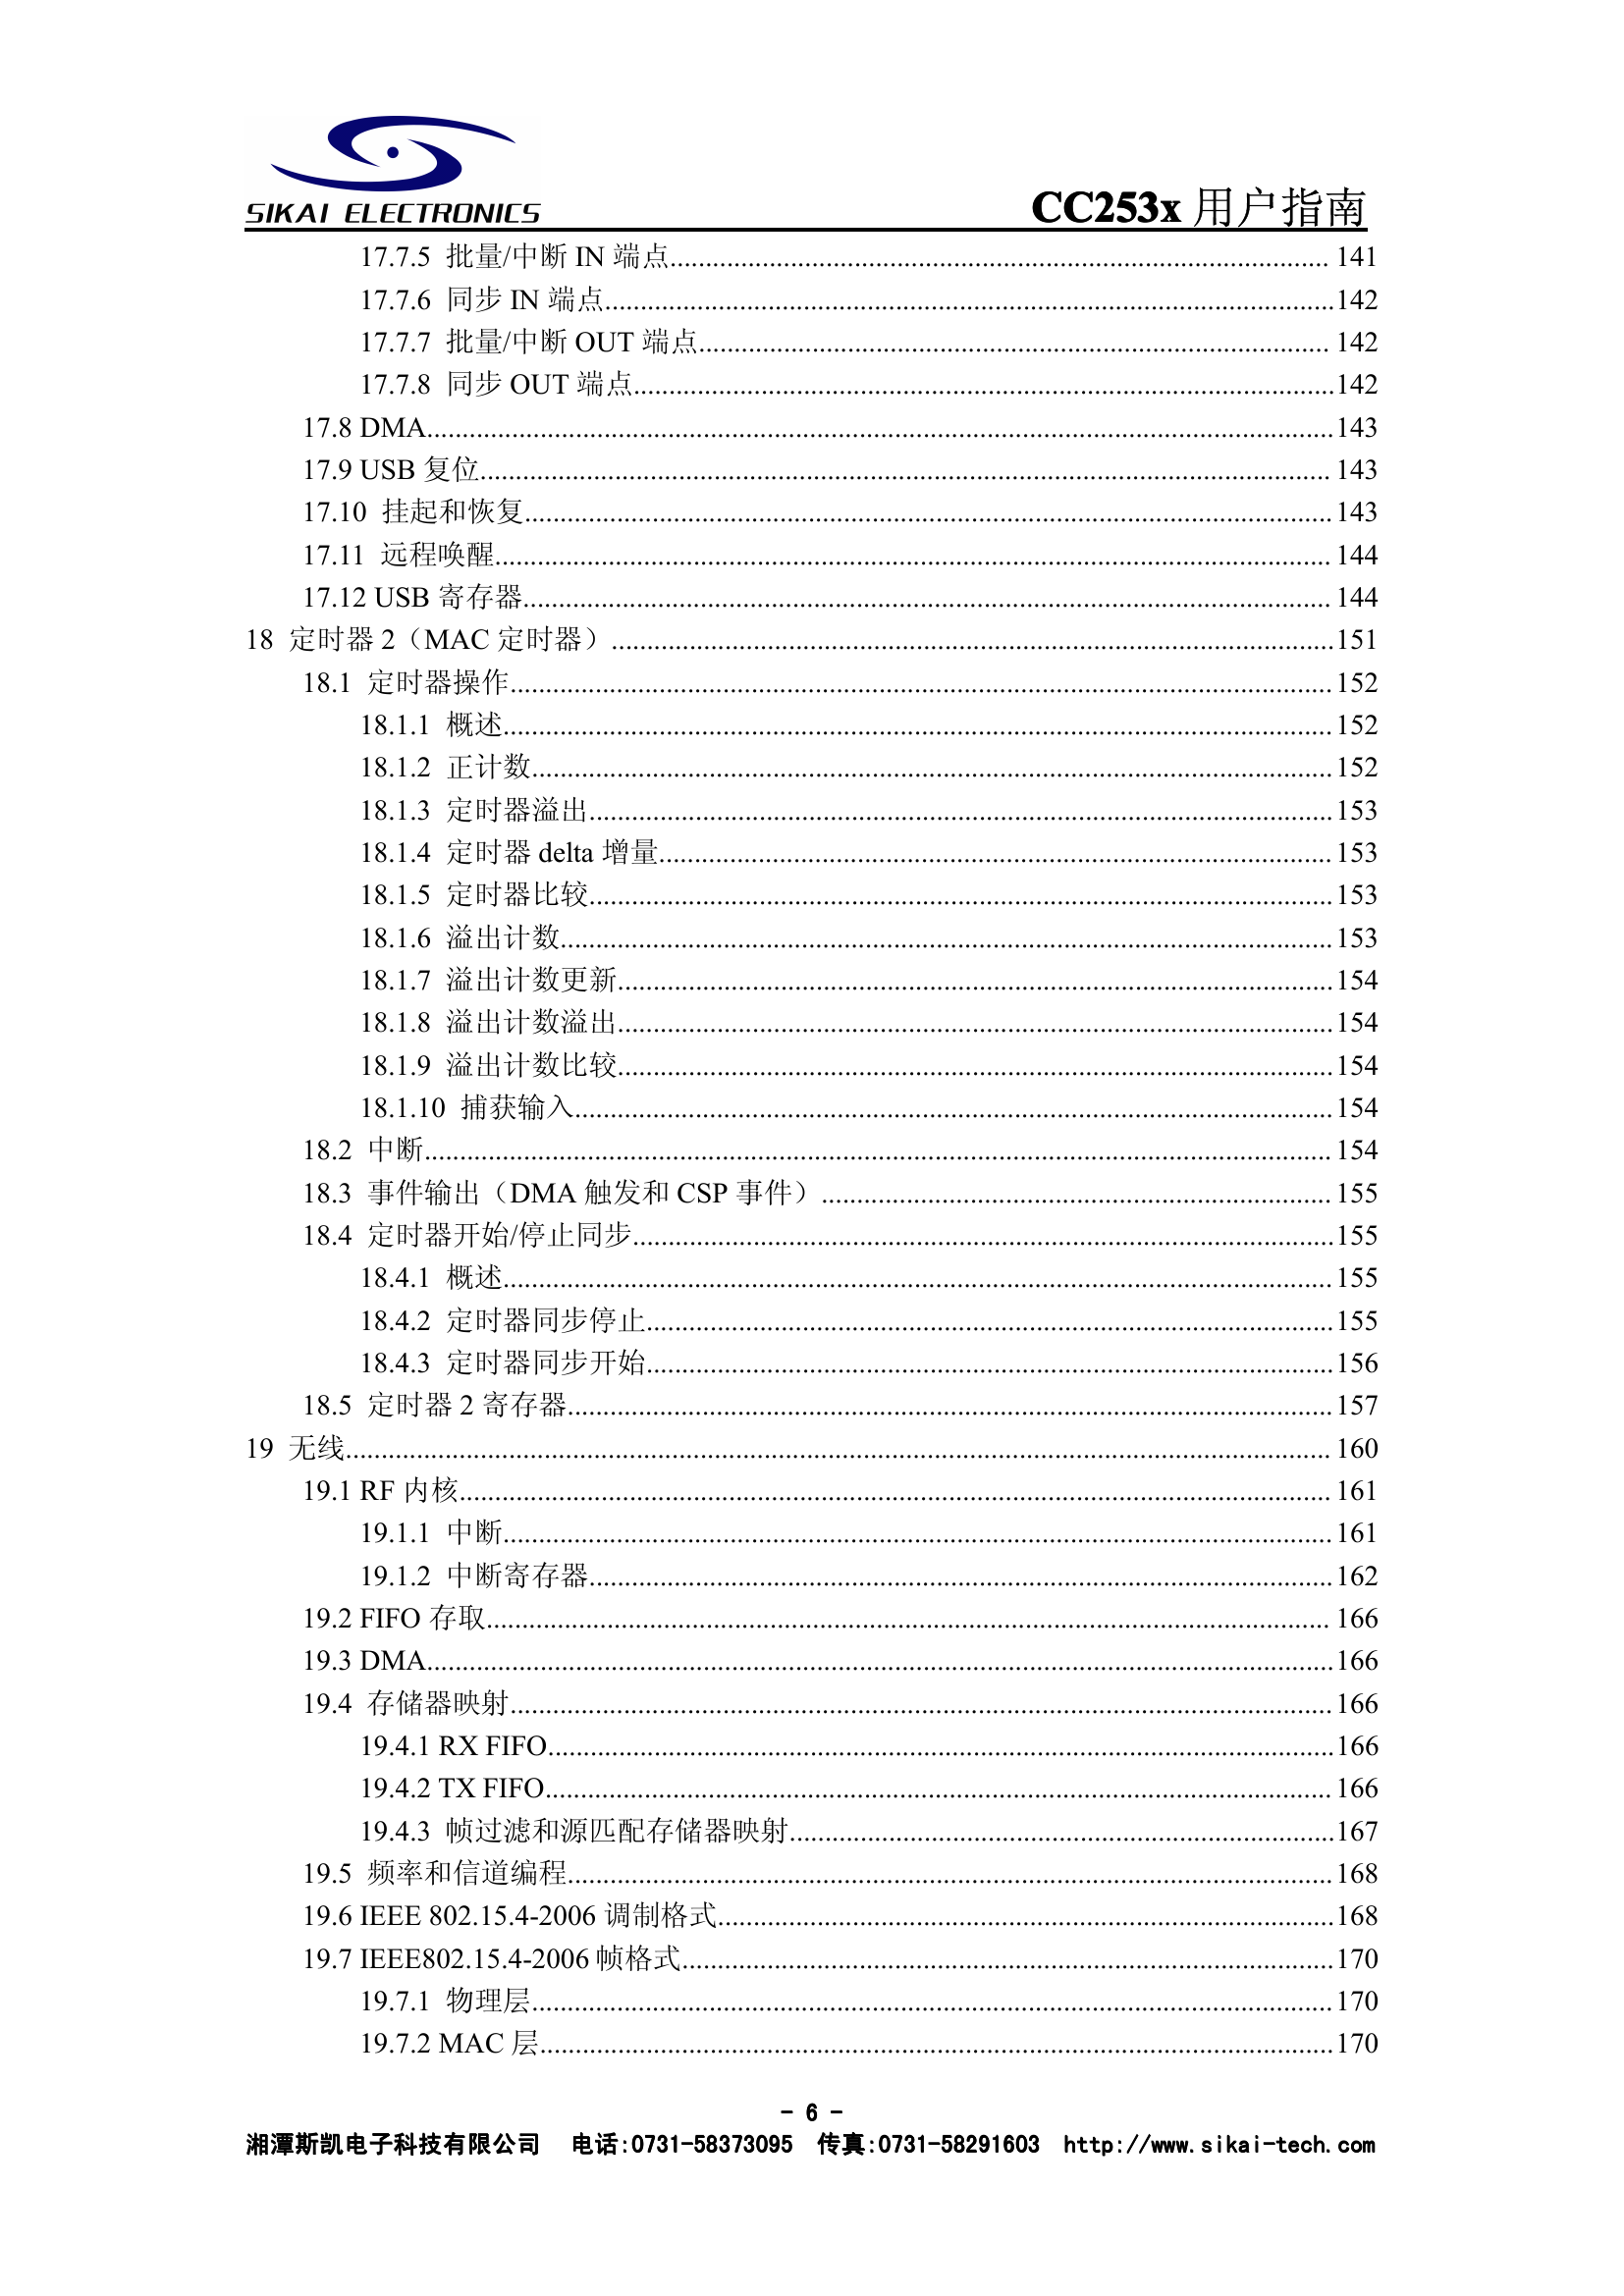 CC253x用户指南(中文).pdf-第7页.png